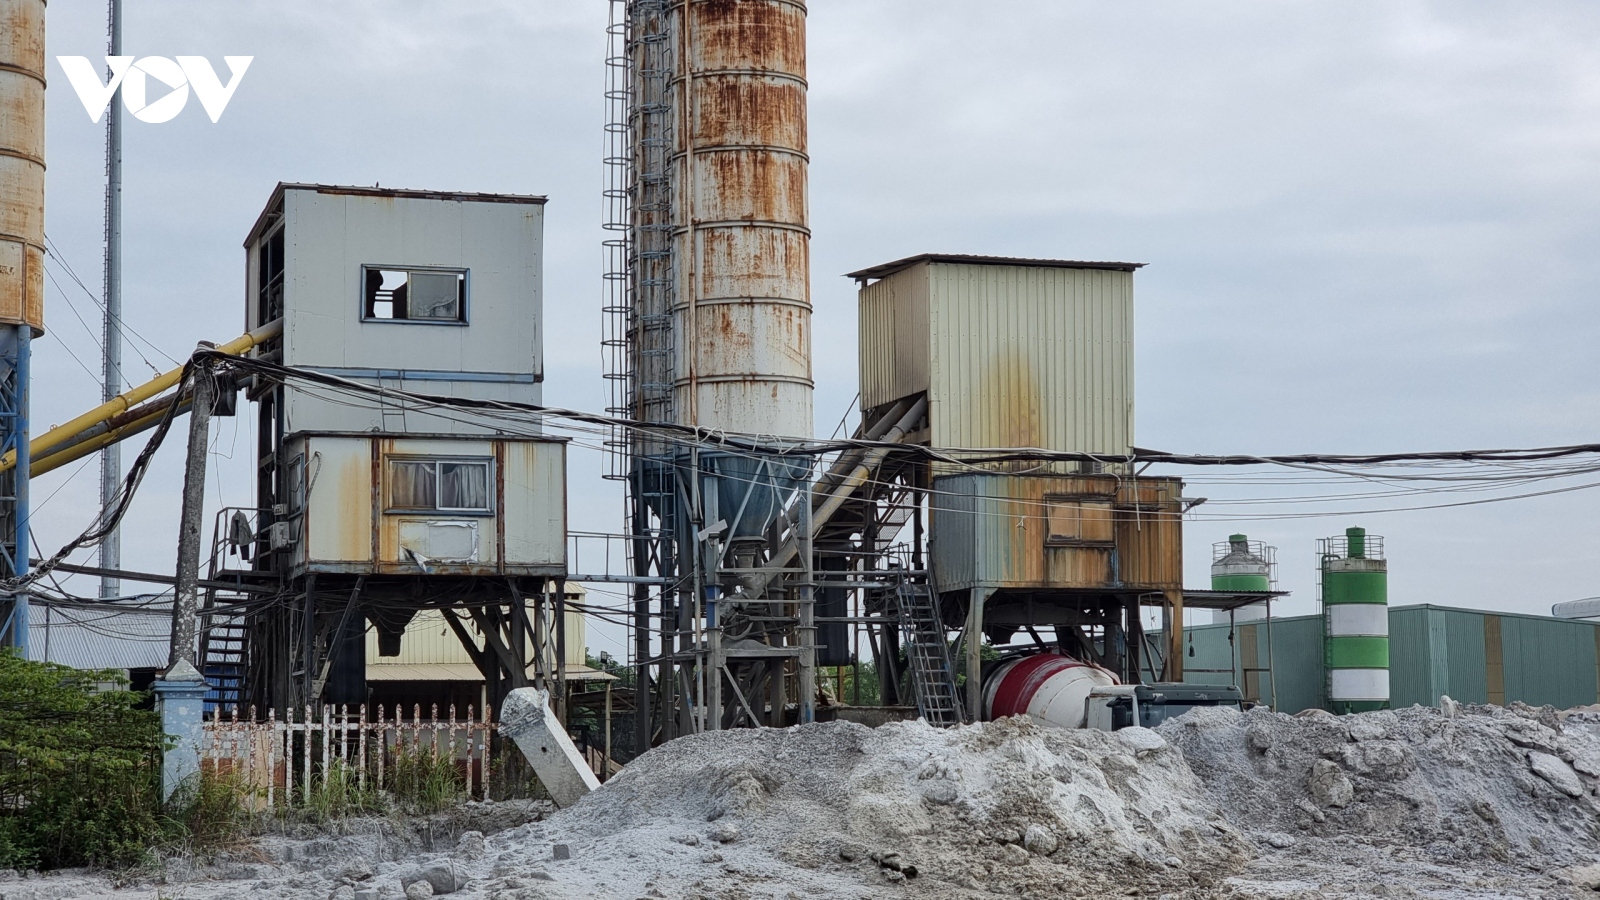 Vi phạm môi trường, doanh nghiệp sản xuất bê tông ở Bắc Giang bị phạt nặng